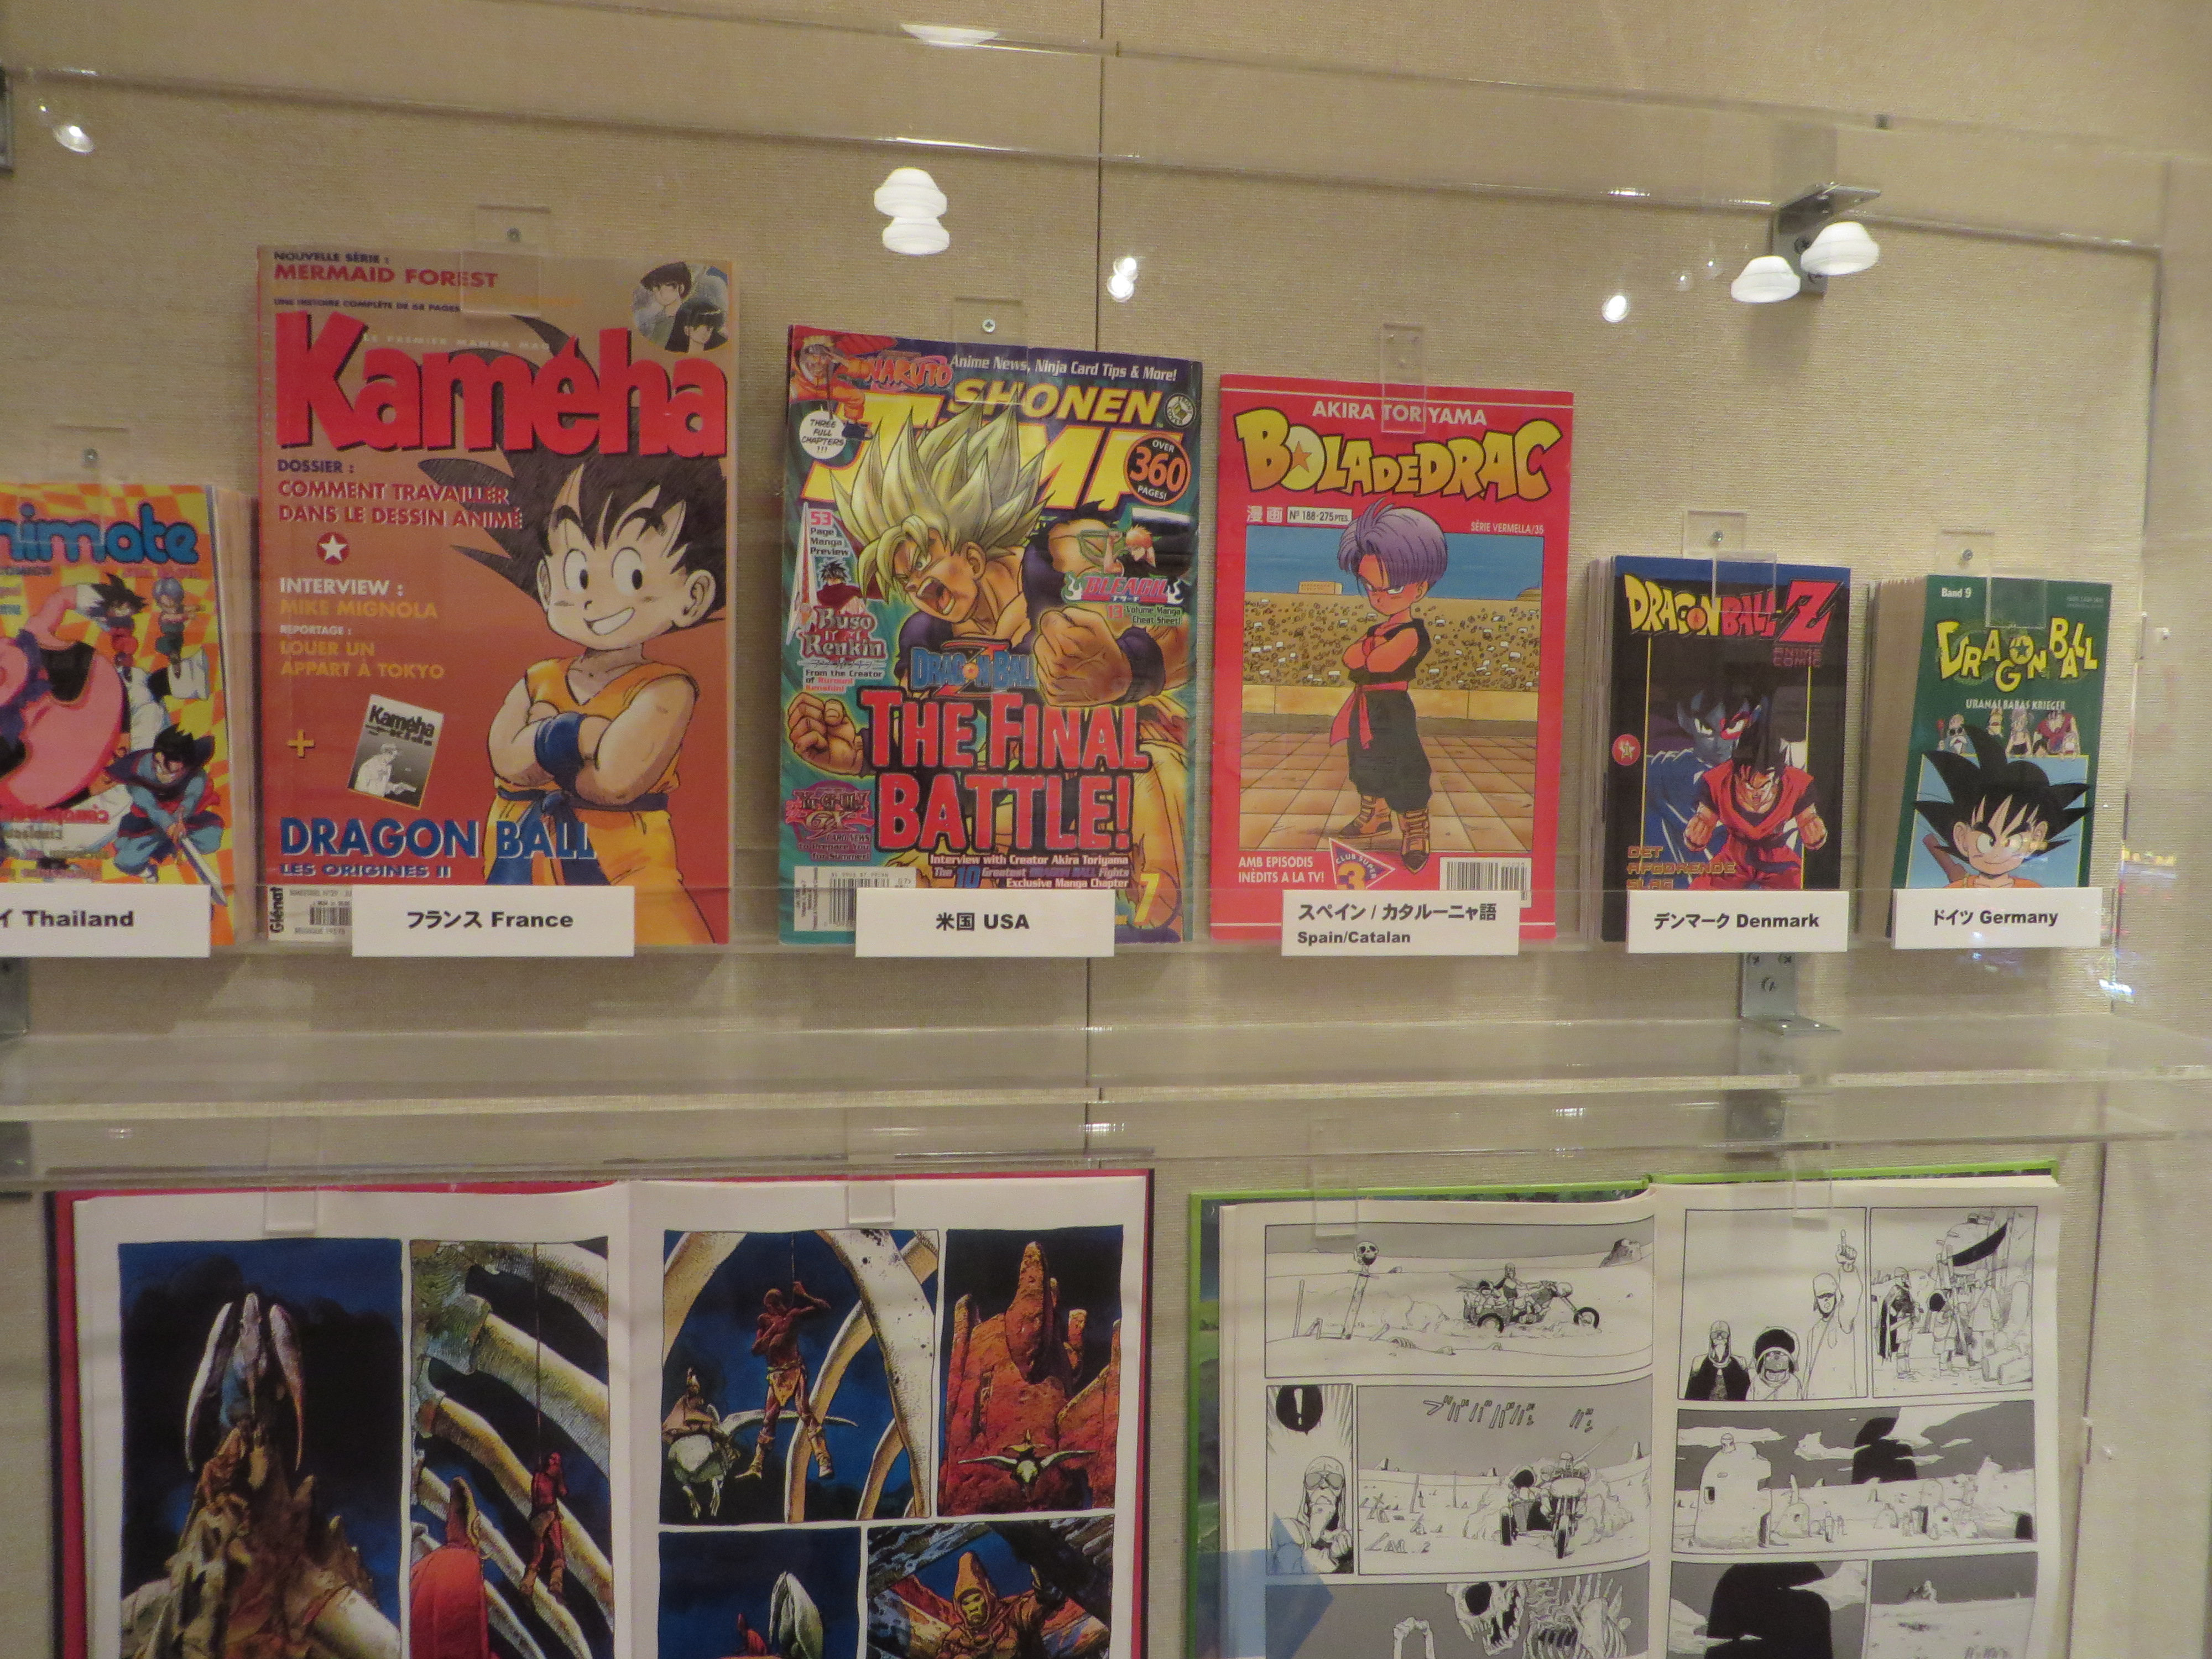 International magazine publications of Japanese manga.